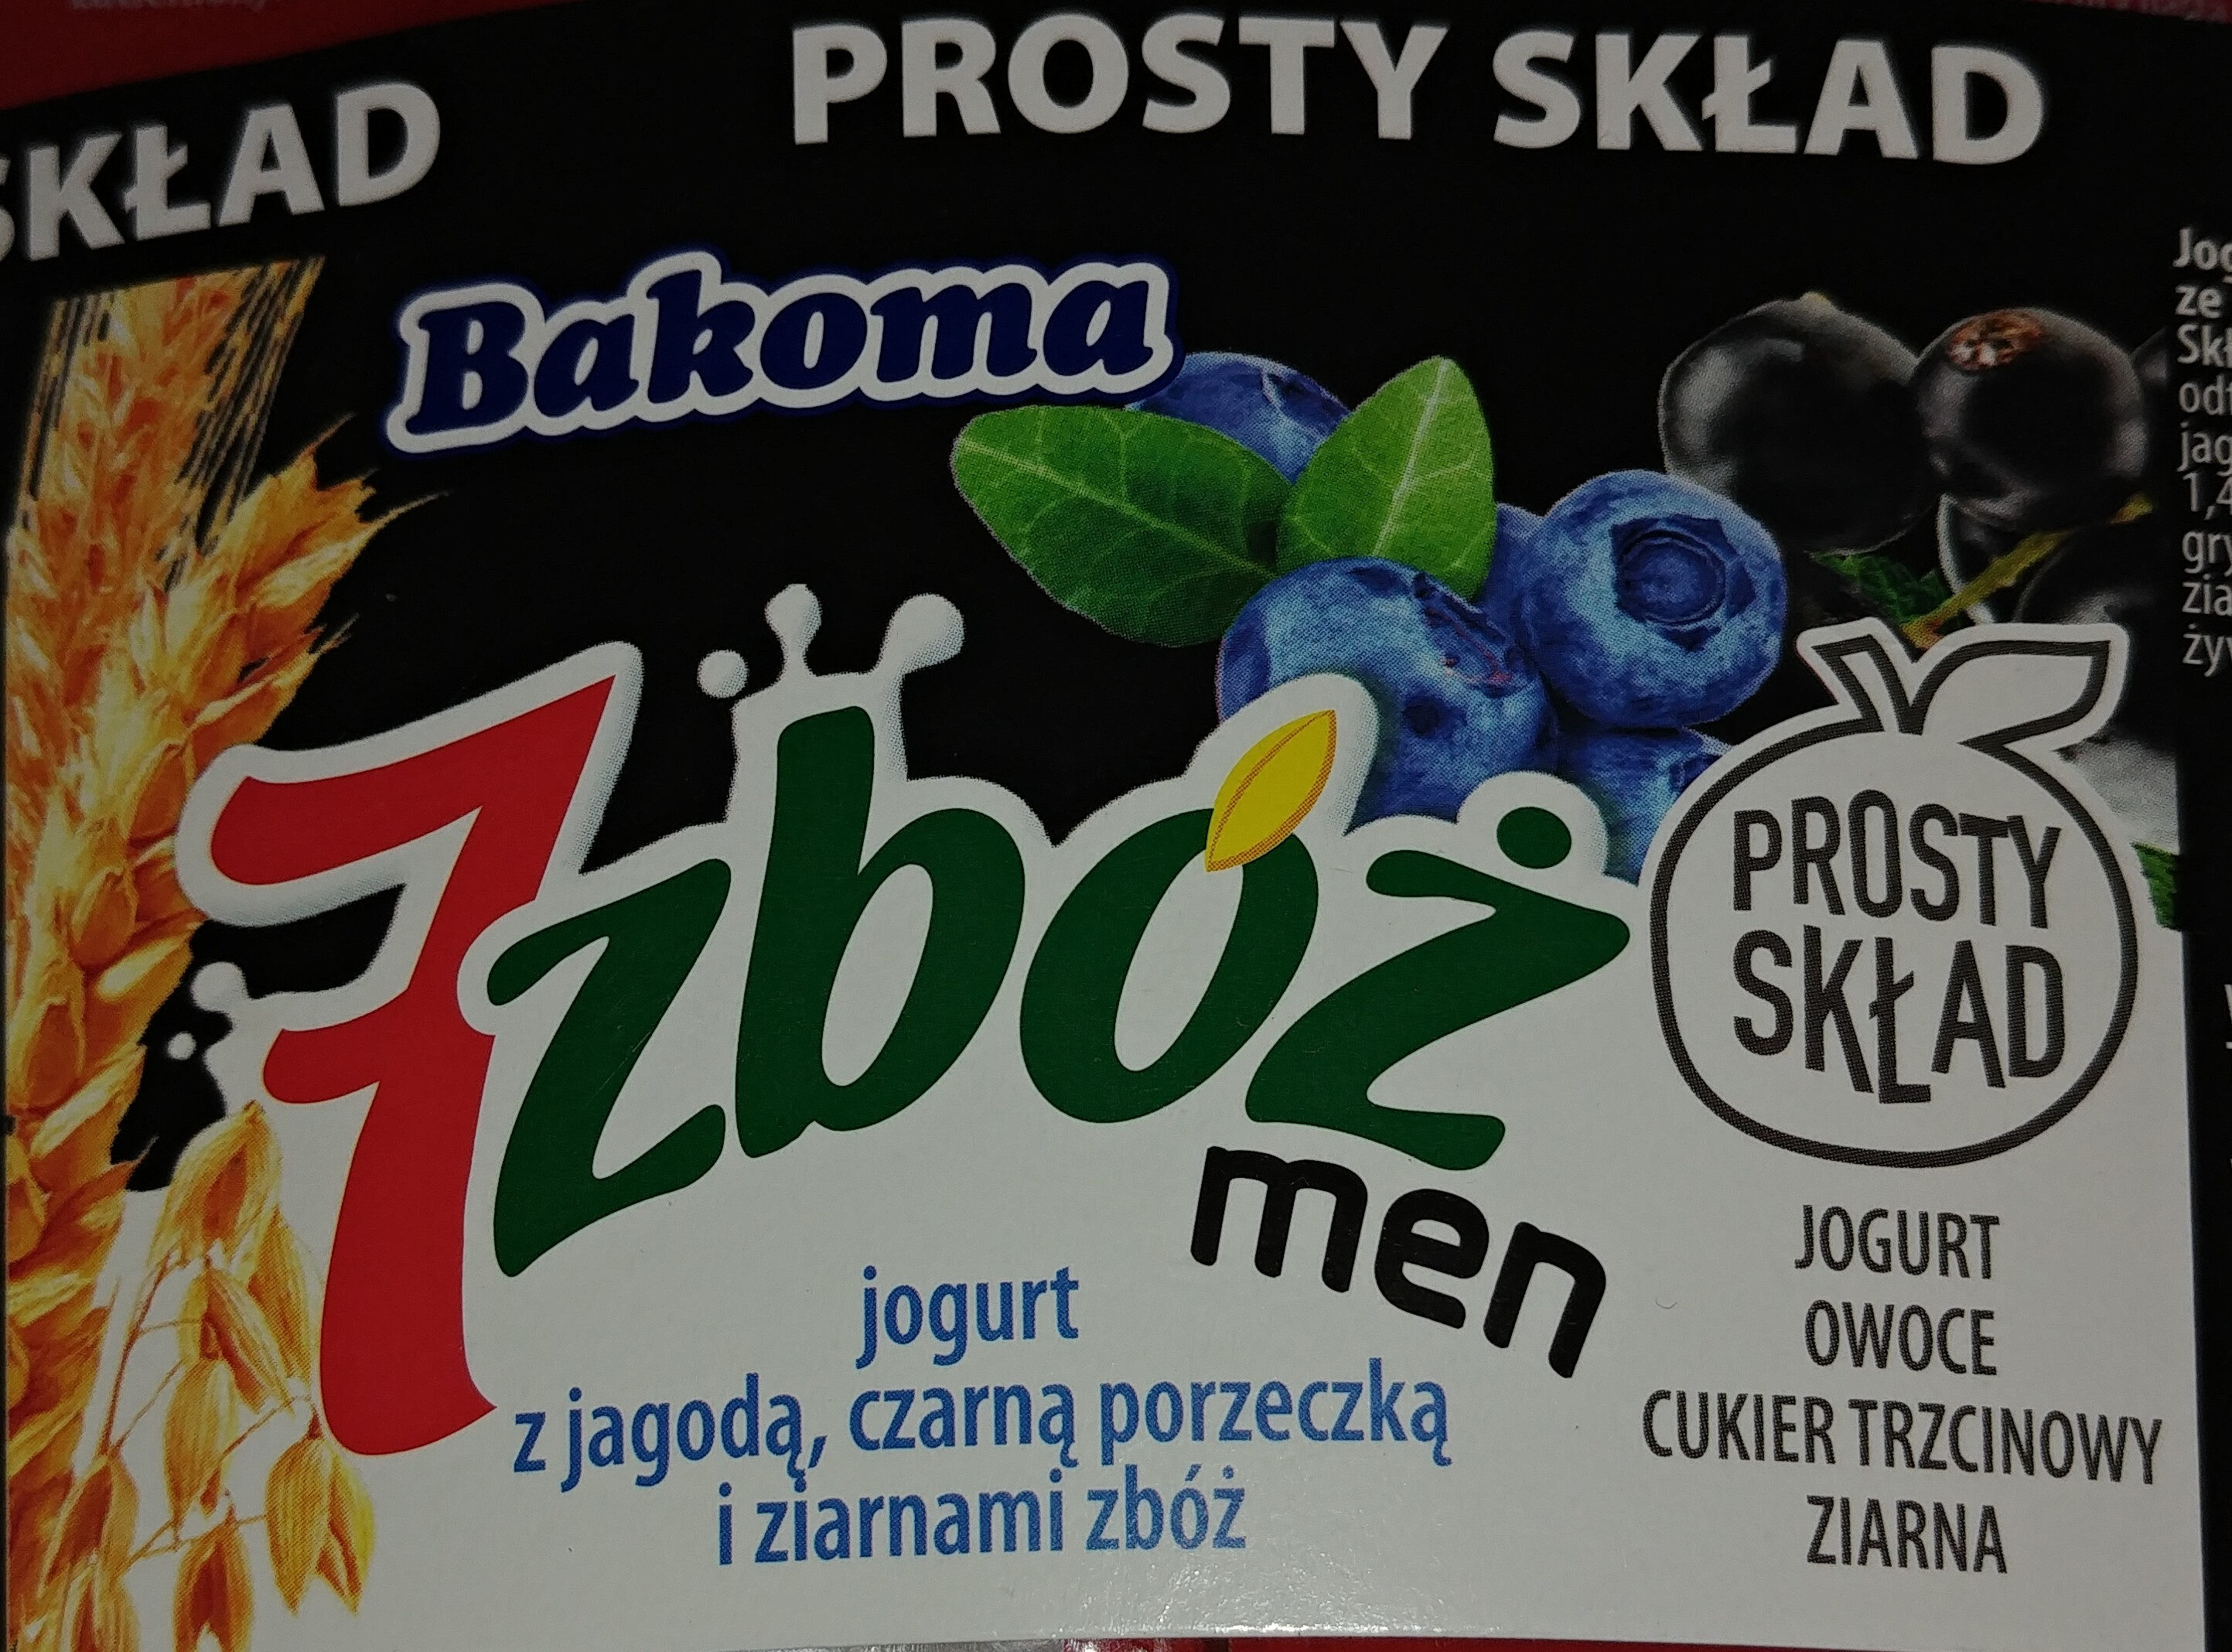 Jogurt z jagodą, czarną porzeczką i ziarnami zbóż - Product - pl